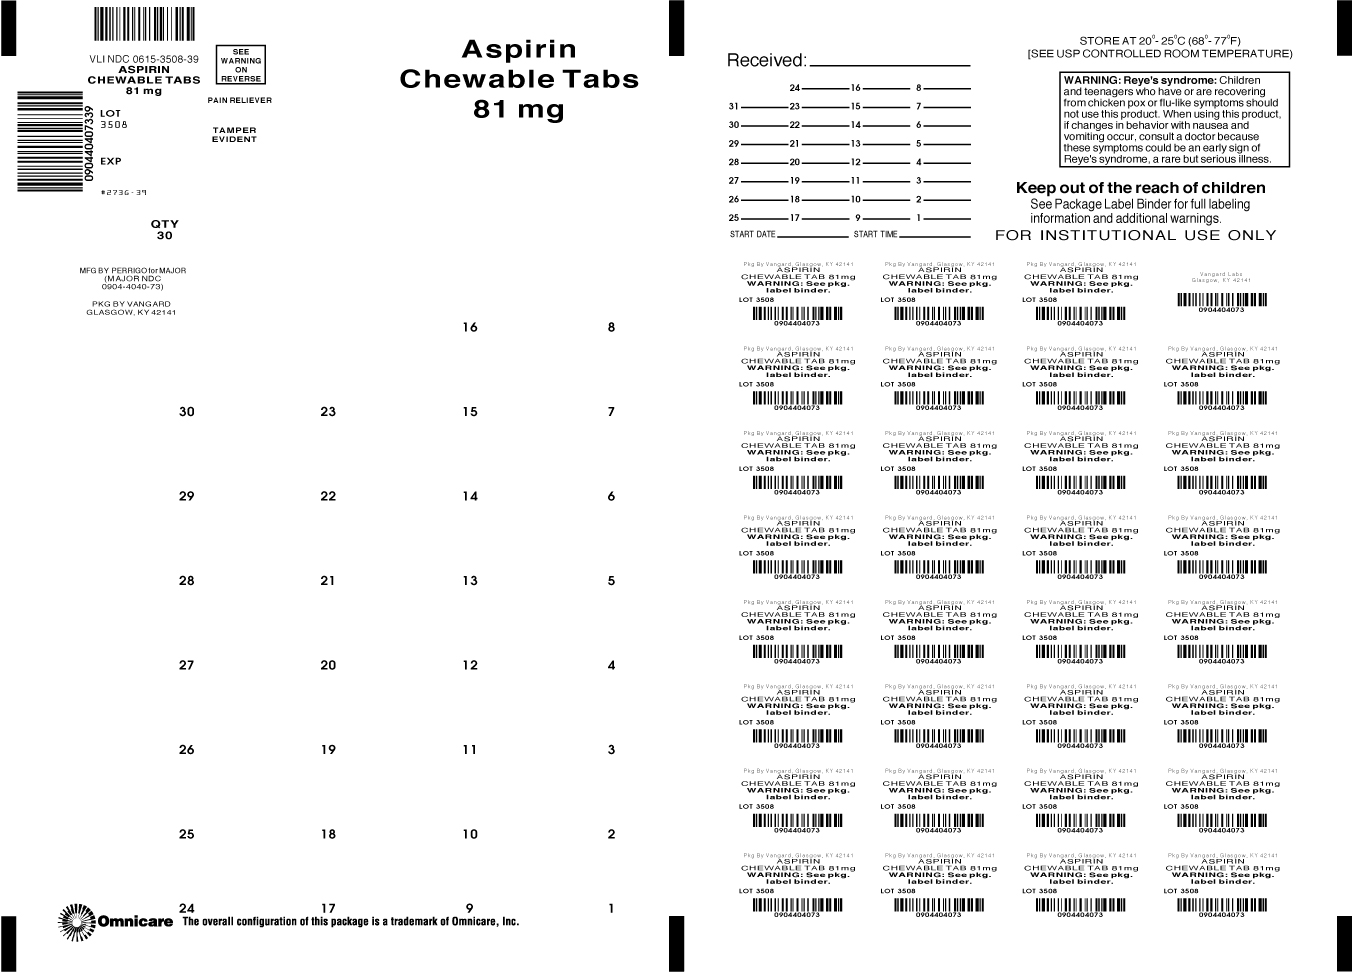 Principal Display Panel-Aspirin (NSAID*) chewable Tabs 81mg *nonsteroidal anti-inflammatory drug